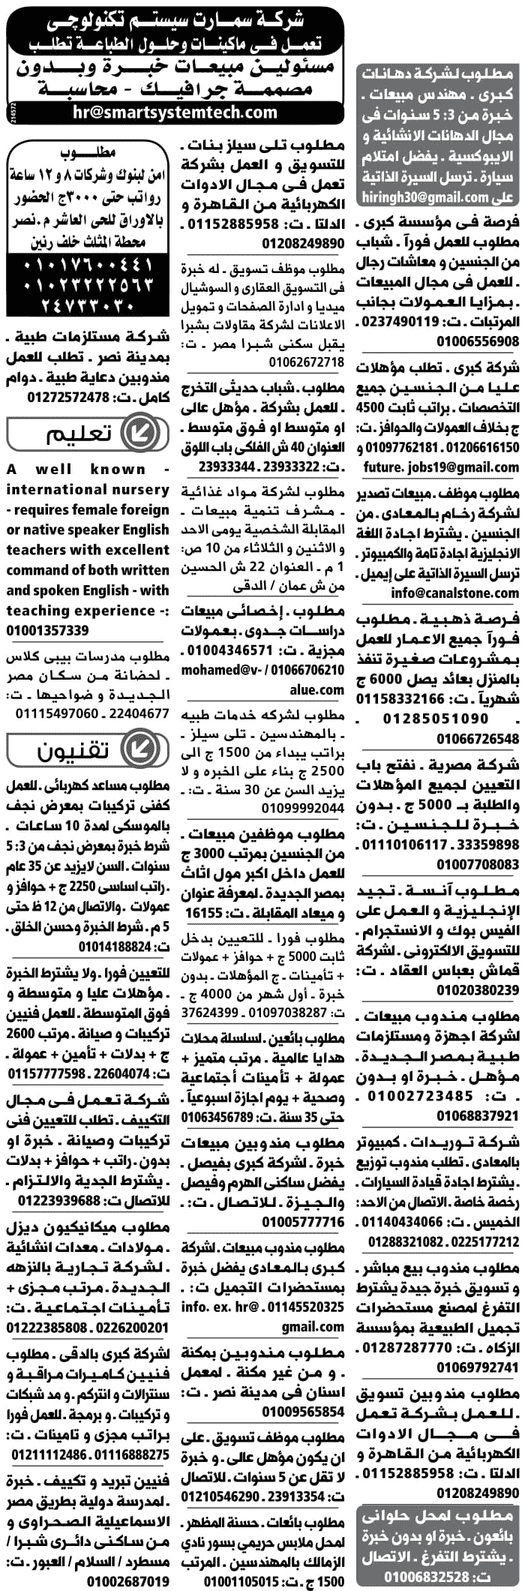 الوسيط مصر ووظائف الجمعة 8/2/2019 17